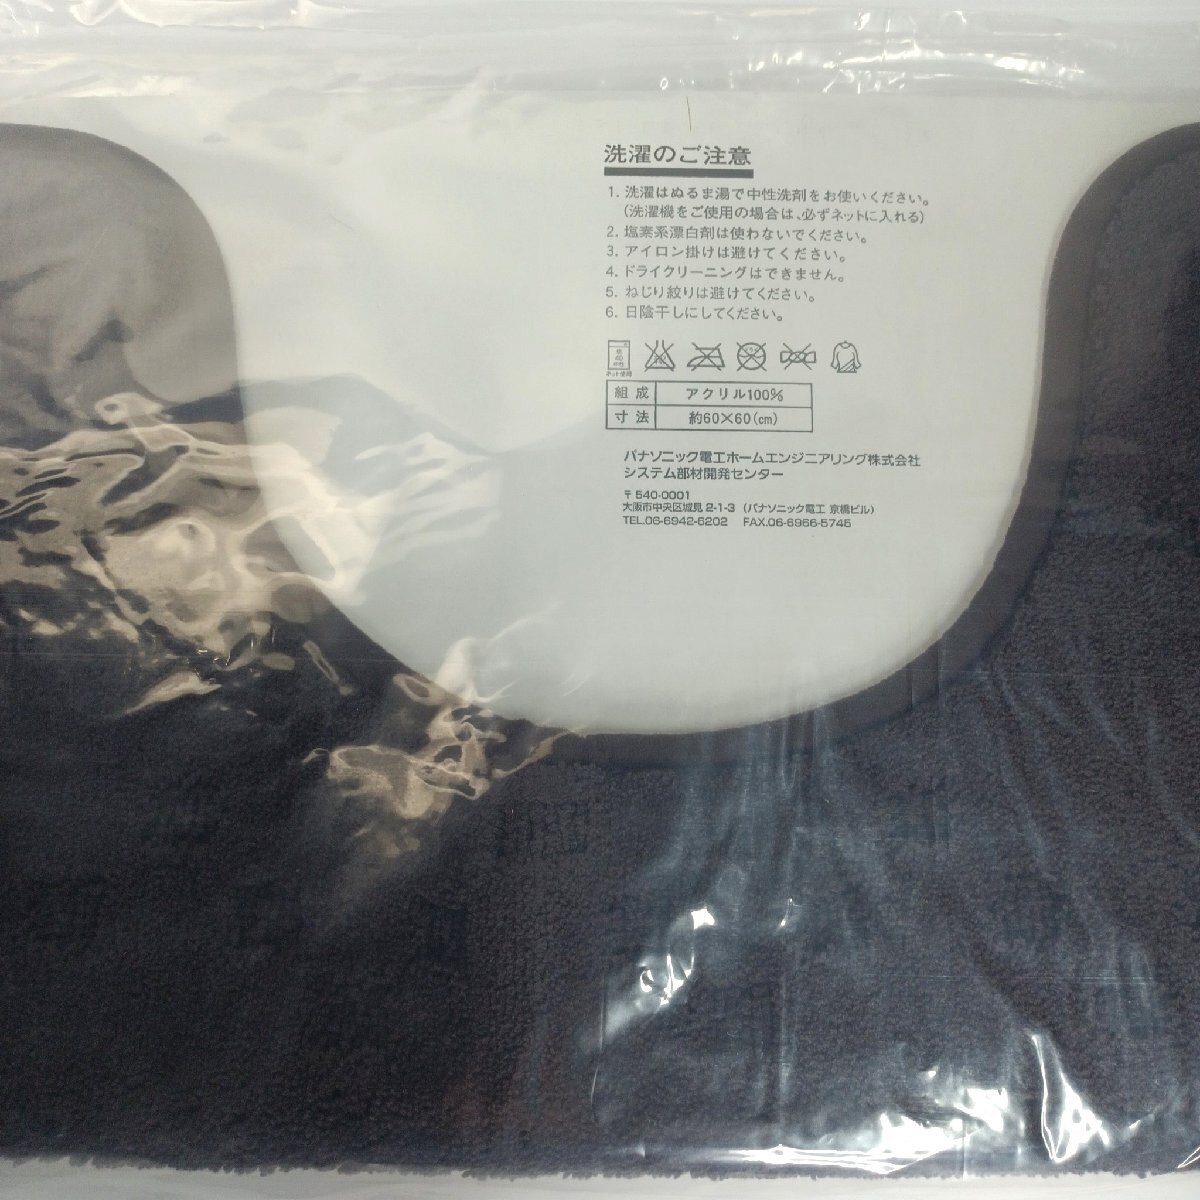  туалет коврик A La Uno предназначенный Brown 2 шт. комплект не использовался упаковка входить AD-CHTM-T 60×60. акрил антибактериальный дезодорация обработка Panasonic [ дорога приятный Sapporo 